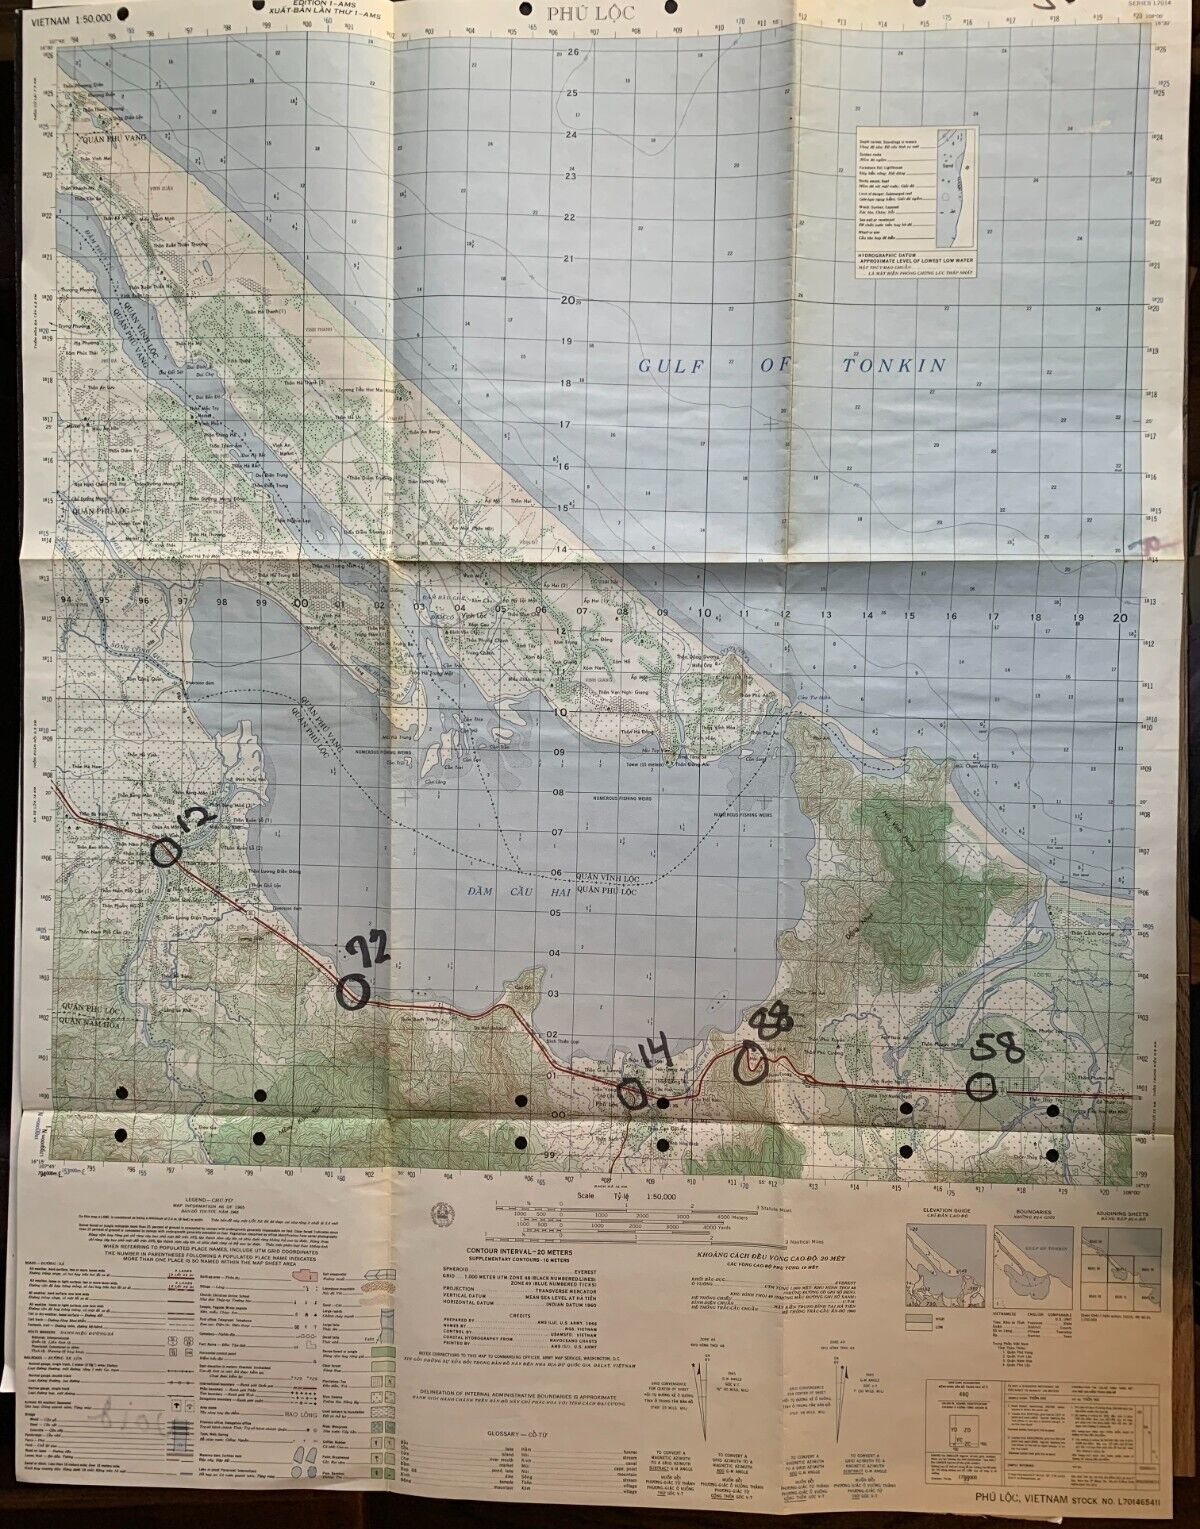 Vietnam War Map U S Army Corp Engineers Bach Ma 6541 Ii 1966 22.5" X 29"